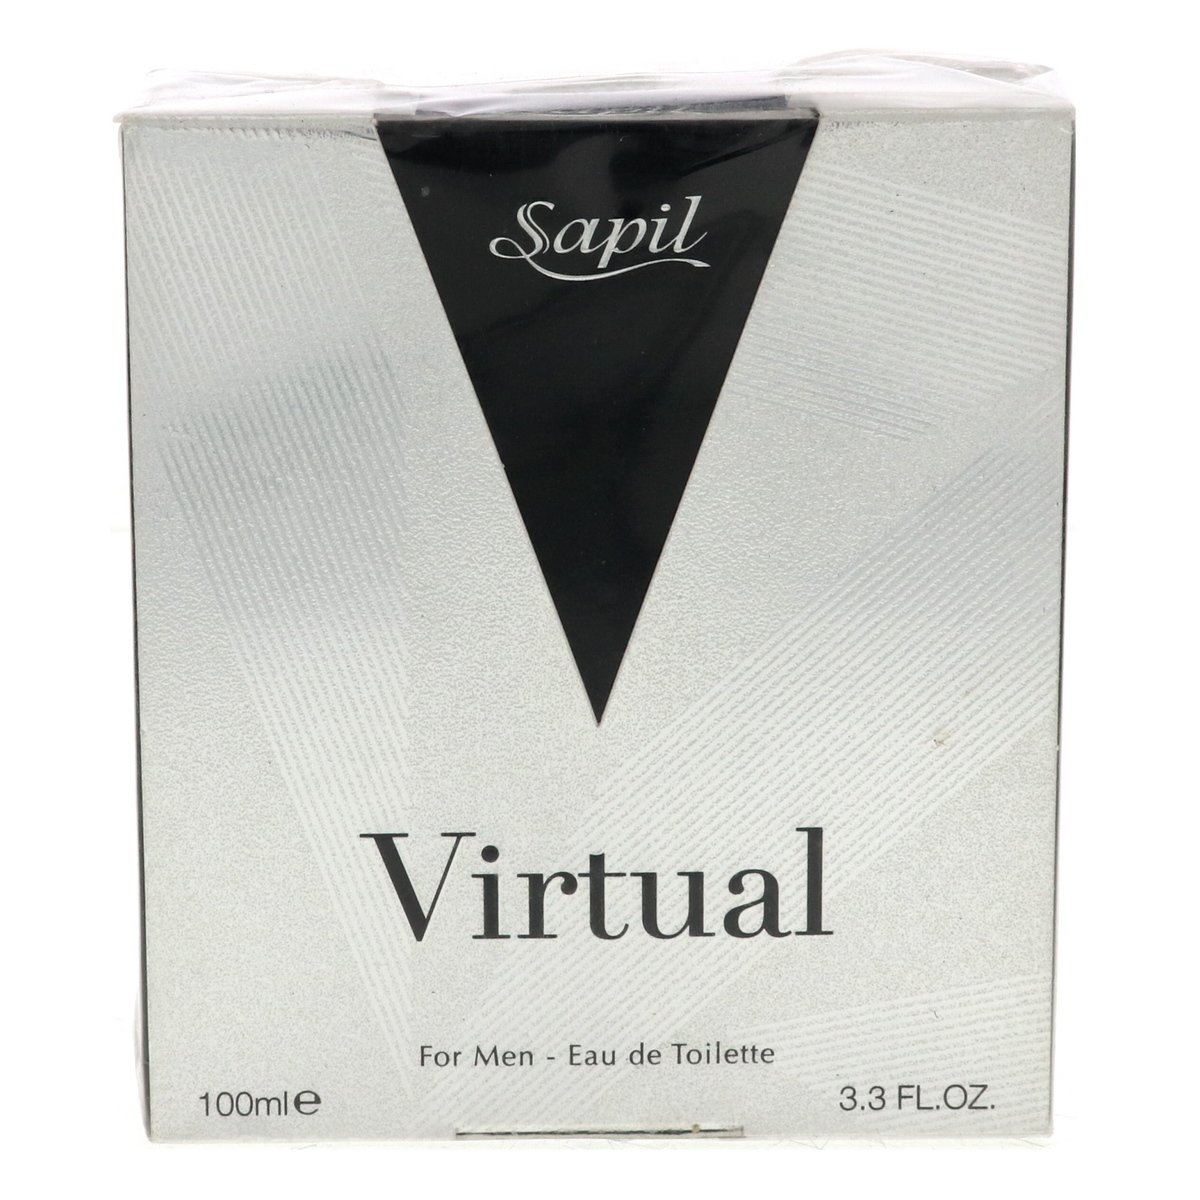 Sapil Virtual EDT For Men 100 ml